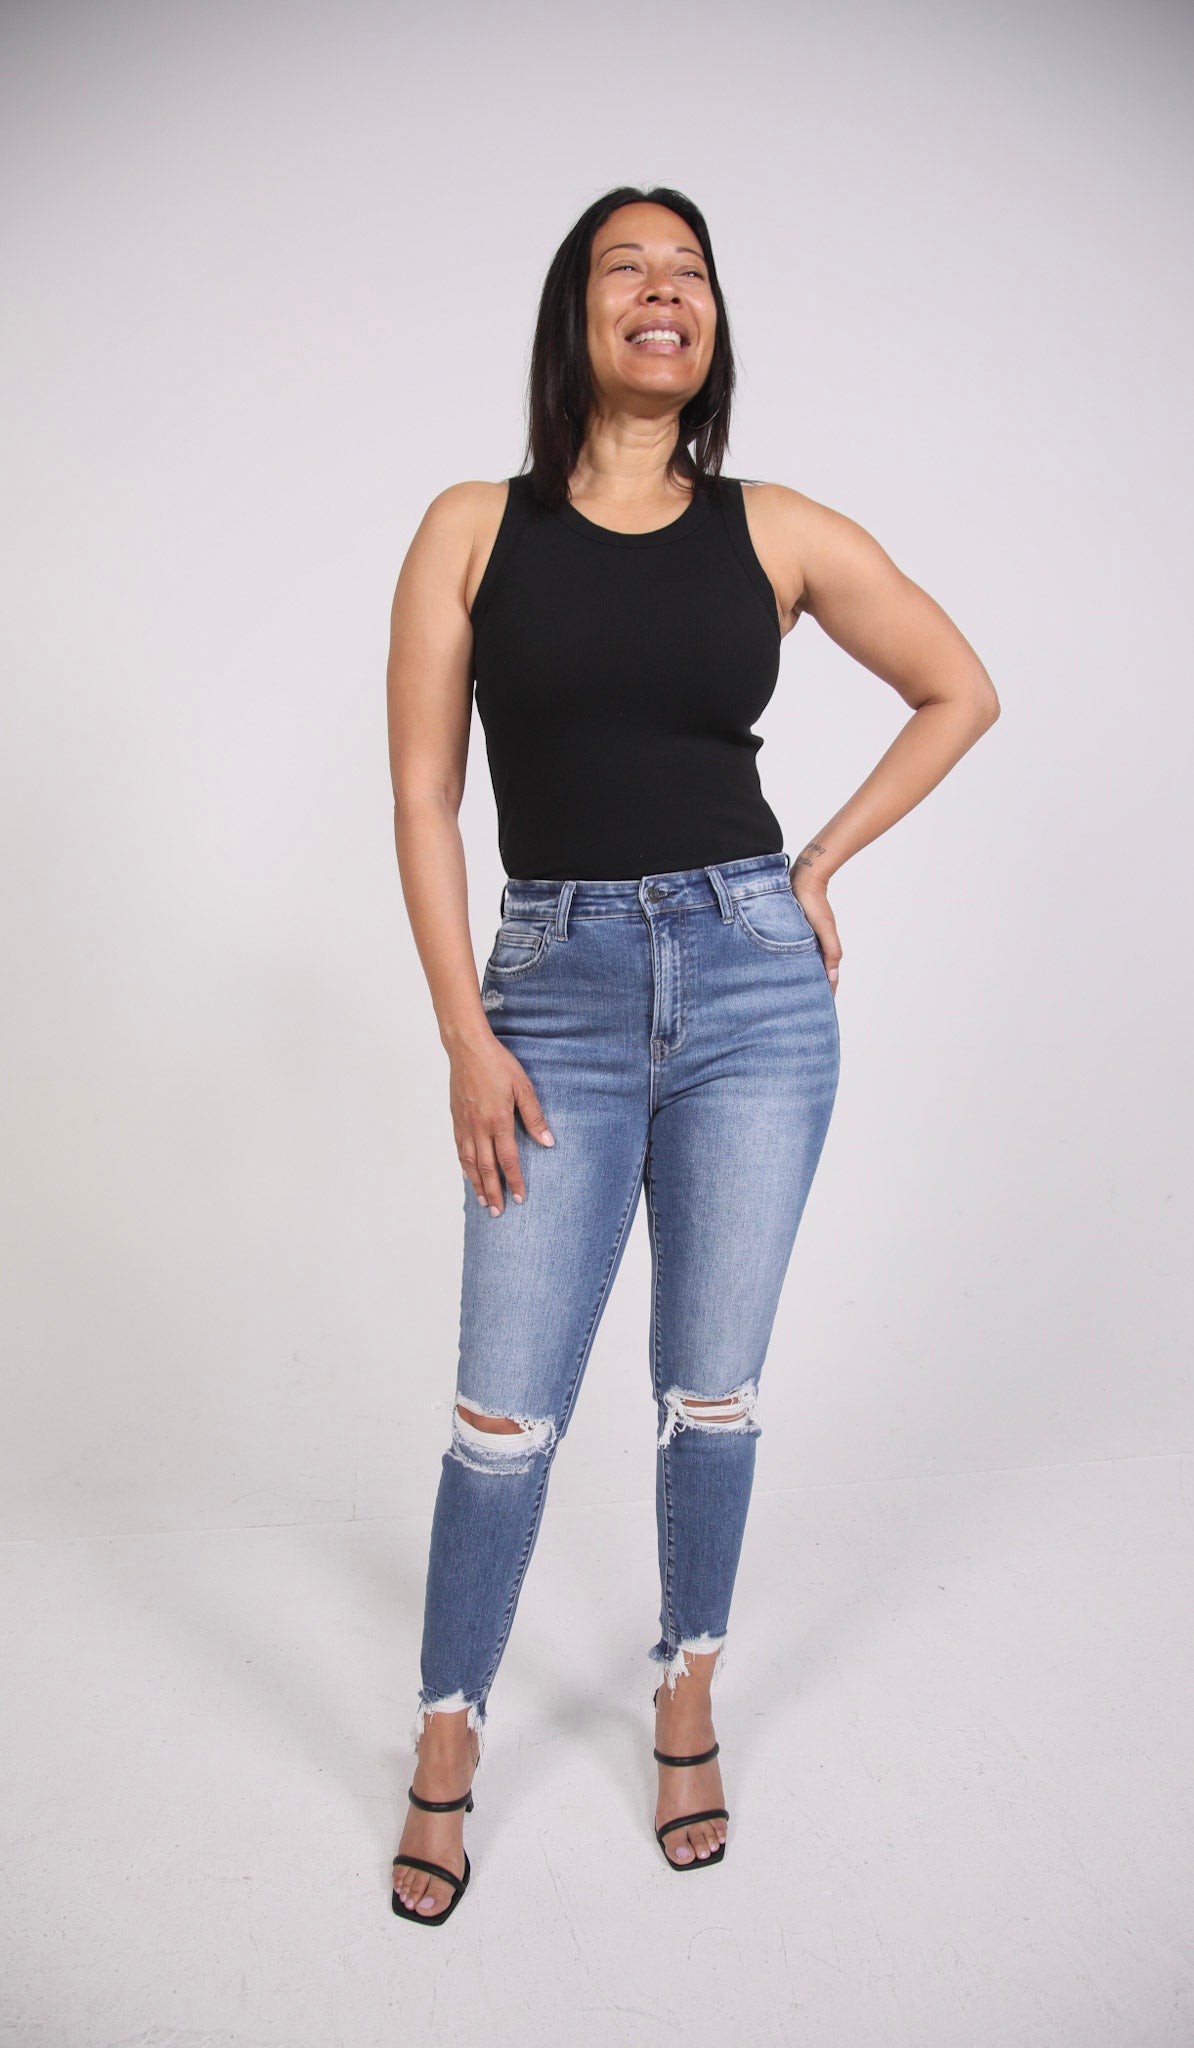 mom jeans fashion nova plus size｜TikTok Search